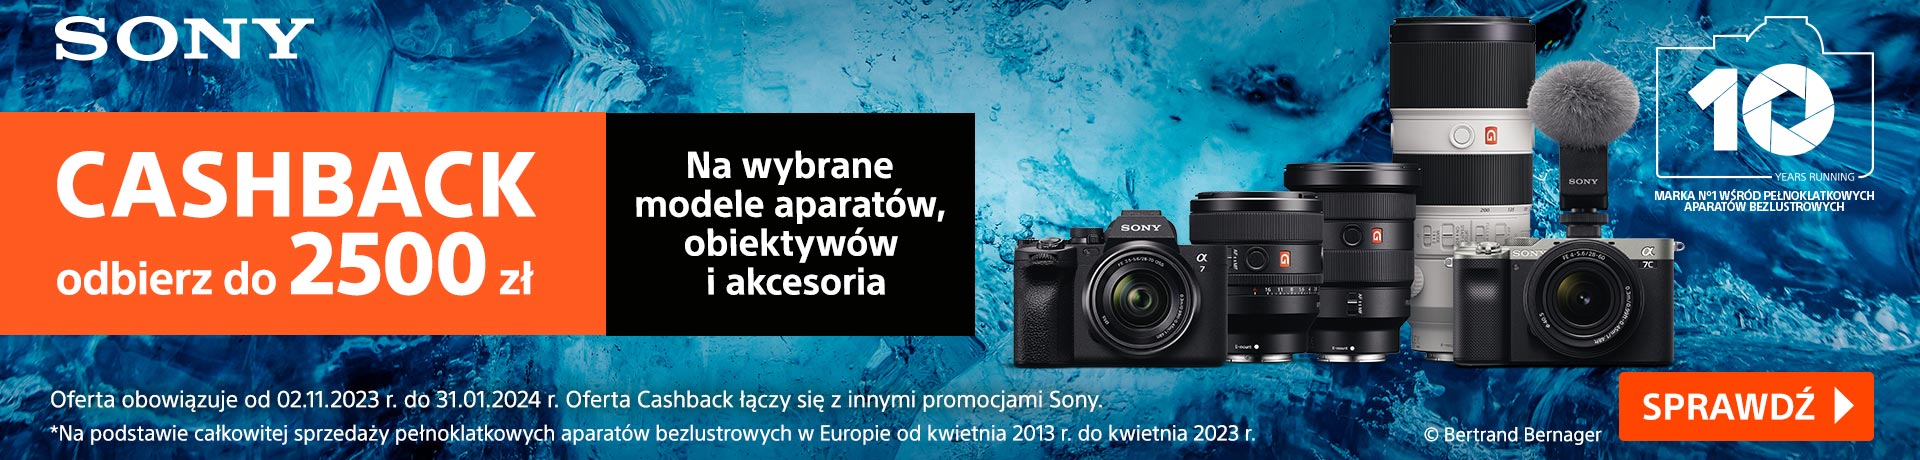 Zimowy cashback Sony do 2500 zł na wybrane aparaty, obiektywy i akcesoria